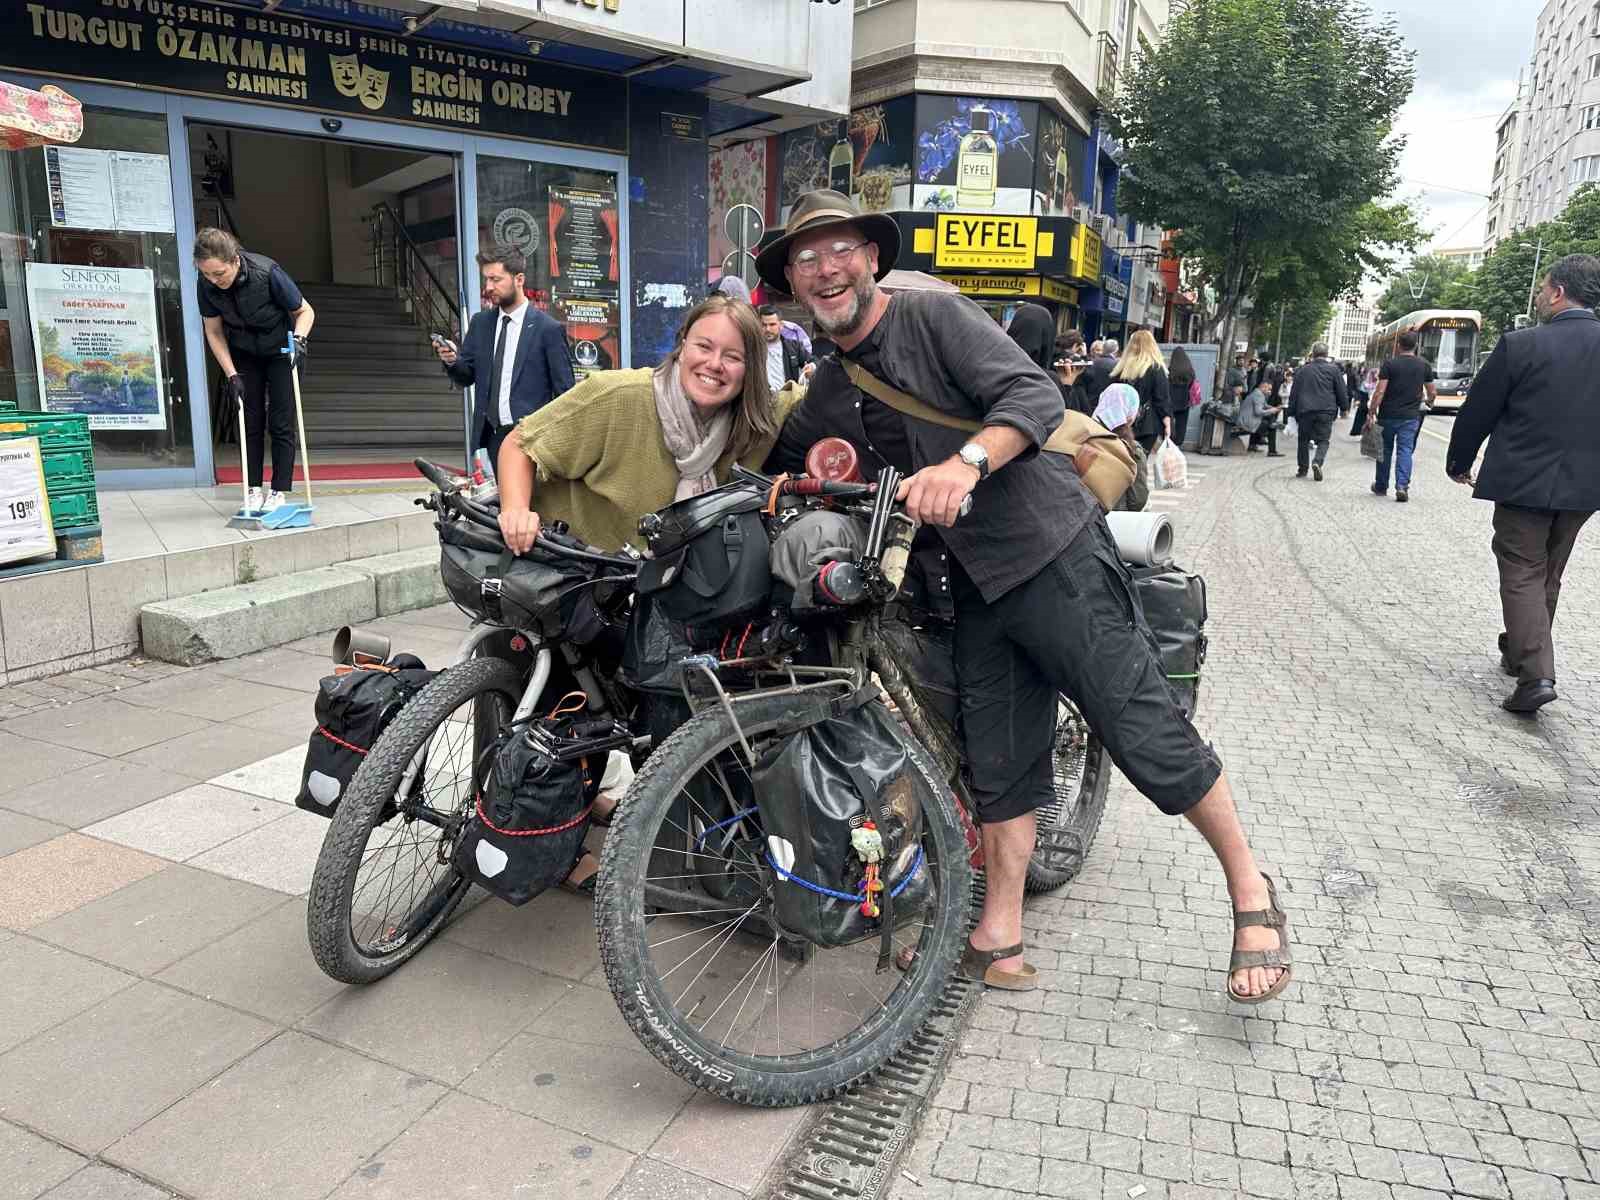 İstanbul’dan Tokyo’ya bisikletleriyle yola çıkan turist çift: “Eskişehir’deki insanlar kadar içten gülen kimse yok”